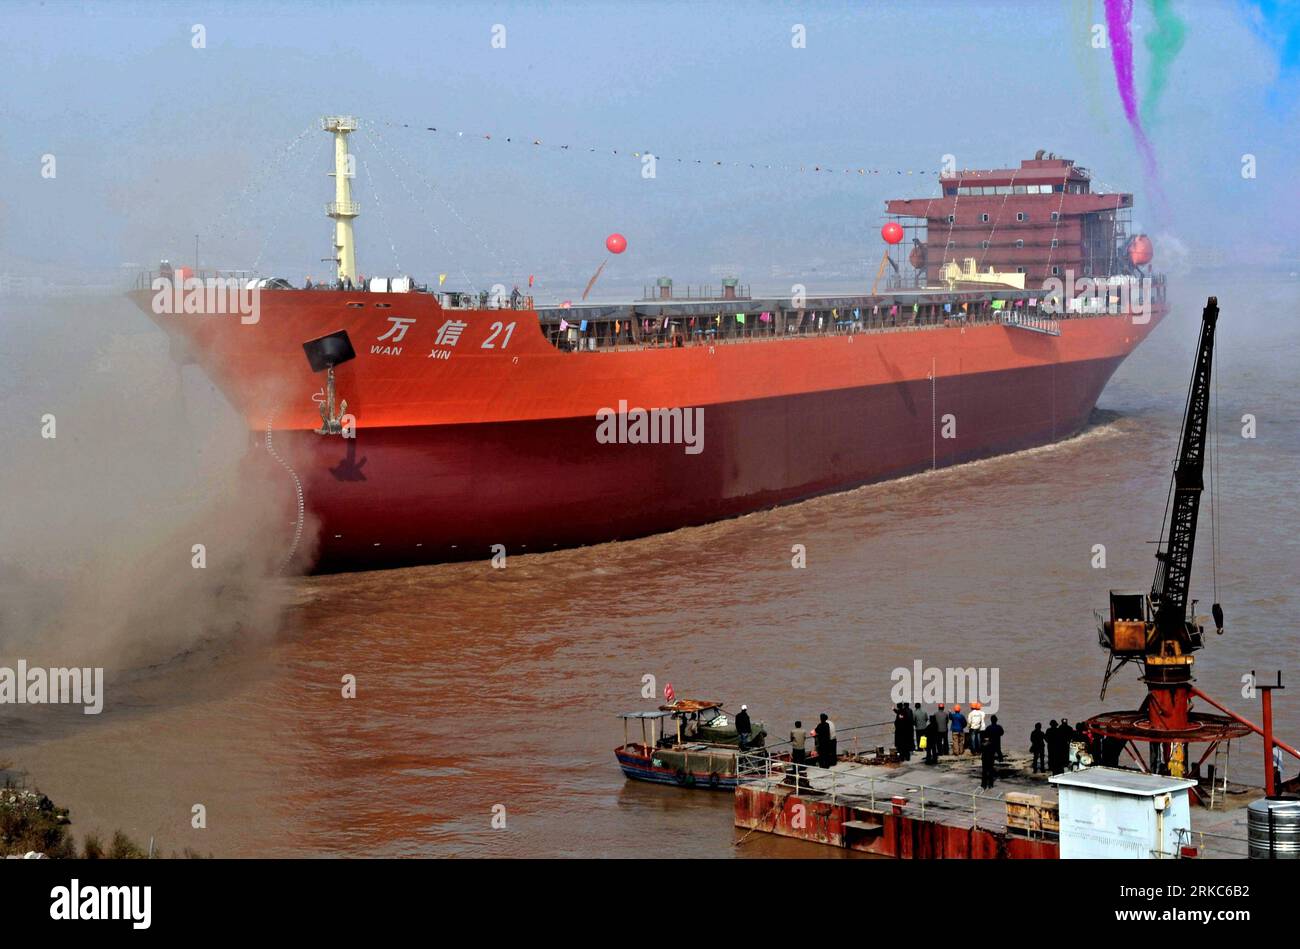 Bildnummer : 54678826 Datum : 25.11.2010 Copyright : imago/Xinhua (101126) -- TAIZHOU, 26 novembre 2010 (Xinhua) -- Un cargo de 31 000 tonnes de port en lourd est lancé à Huangyan de la ville de Taizhou, province de Zhejiang dans l'est de la Chine, le 25 novembre 2010. En plus de 40 ans, l'océan vaste et profond a donné à Li Changxian tout sauf les soucis. Mais depuis le début de la crise financière mondiale il y a deux ans, le milliardaire de 44 ans est tombé dans le blues. Debout dans le chantier naval autrefois animé de Hongda qu'il dirigeait à Taizhou, Li Changxian posa sa main sur la coque rouillée d'un navire inachevé et émerveillement Banque D'Images